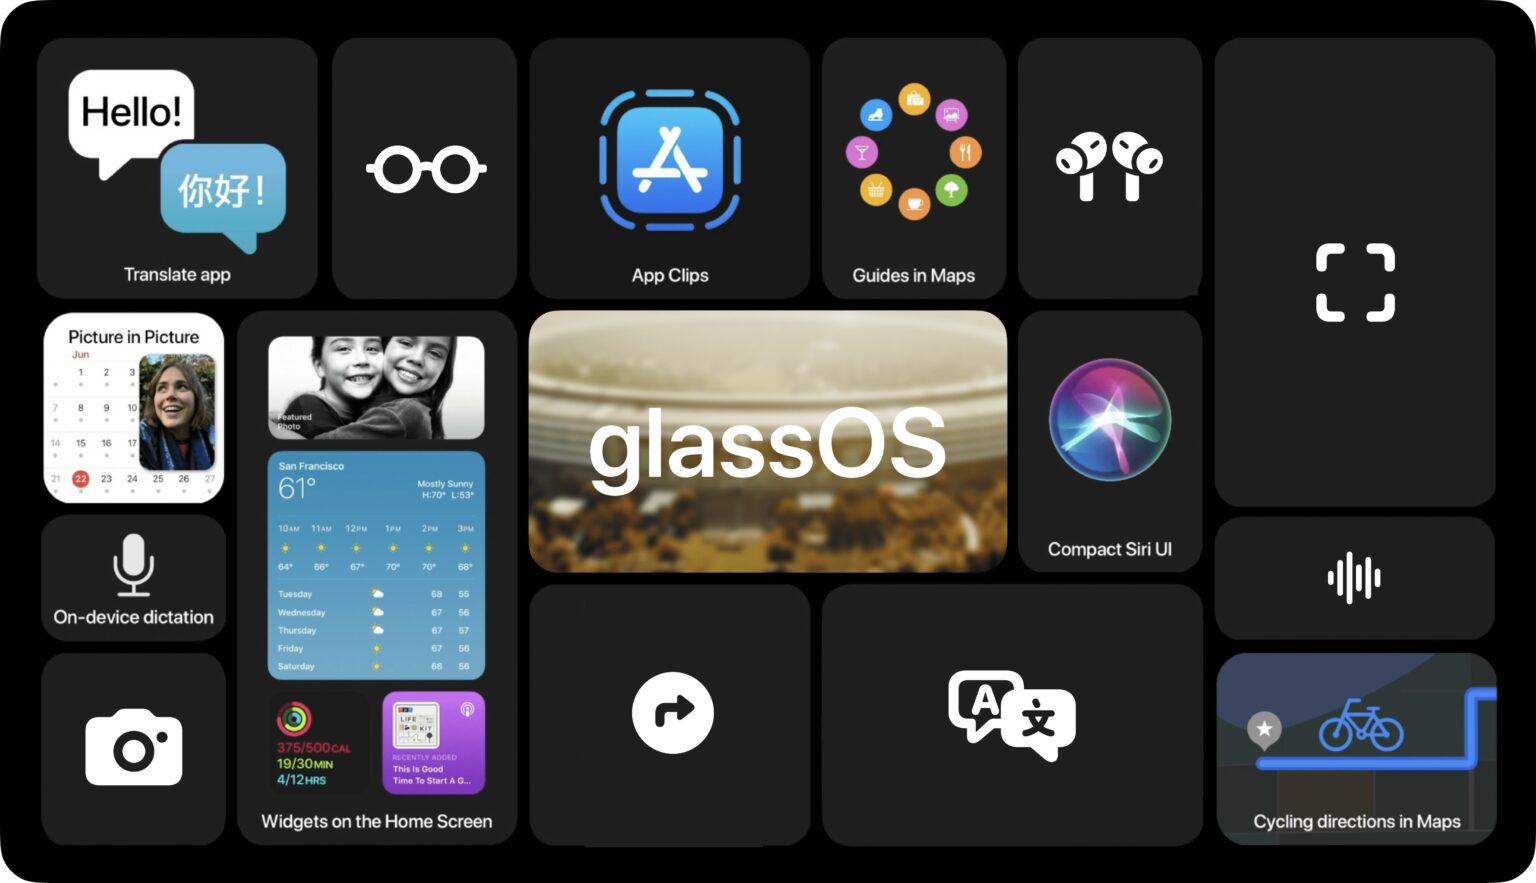 Így töri az utat az iOS 14 a szemüveges „glassOS”-nek